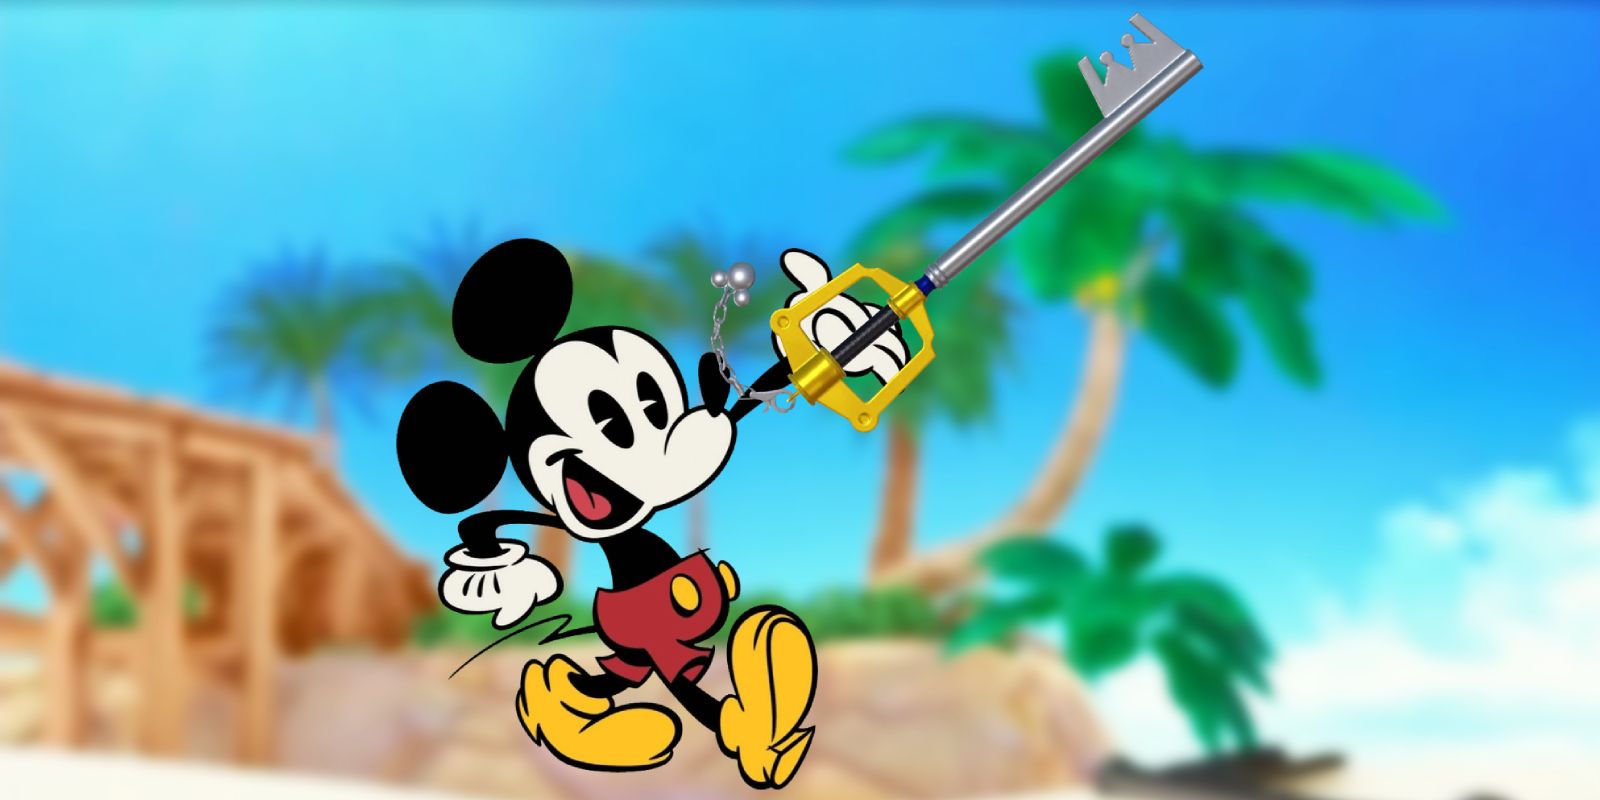 Kingdom Hearts Mickey Mouse - Disney  Kingdom hearts characters, Disney kingdom  hearts, Kingdom hearts art